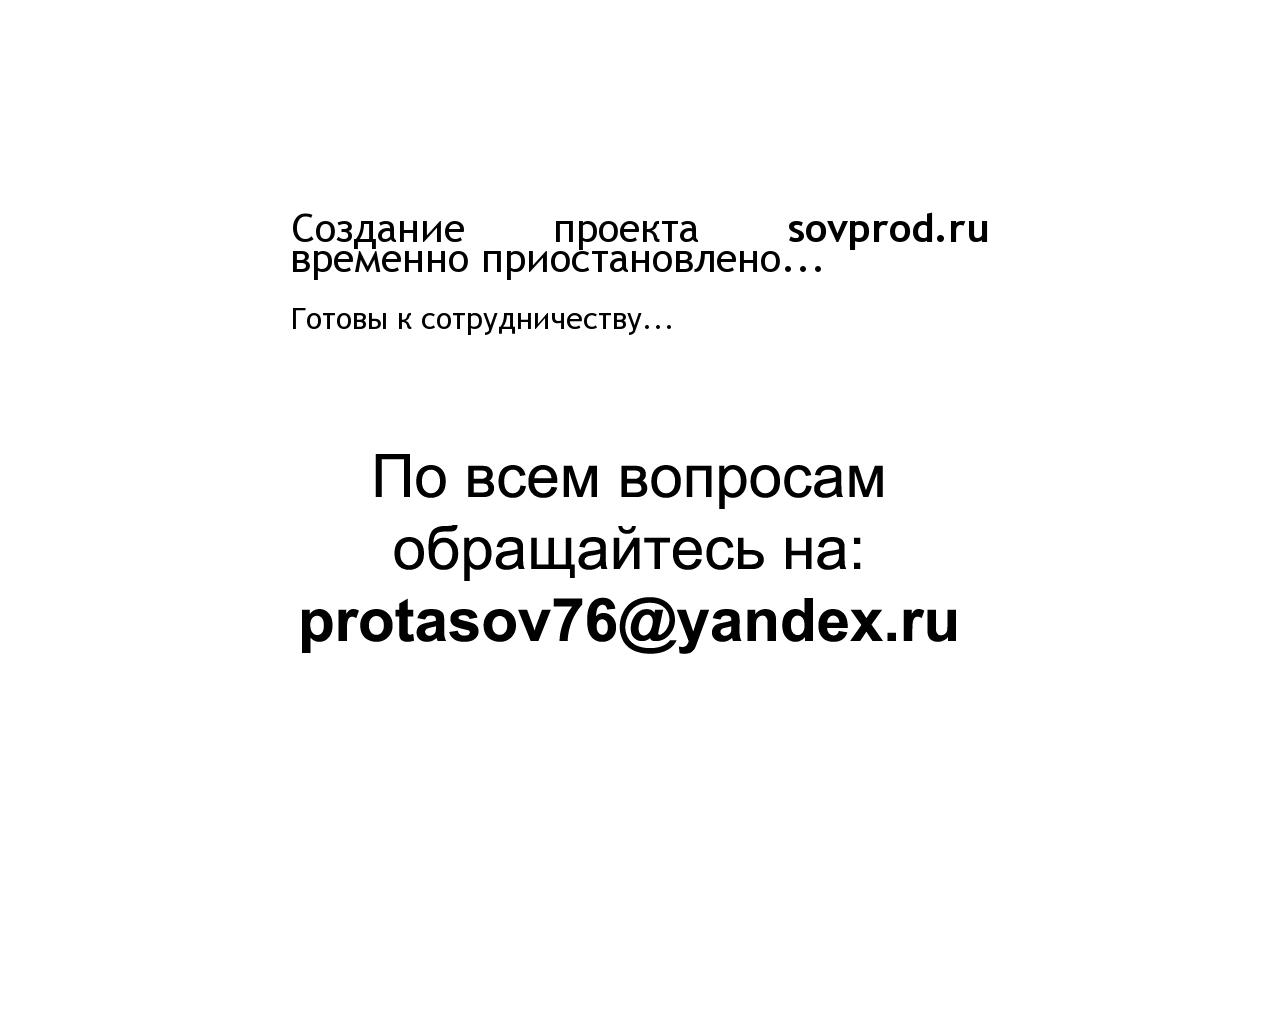 Изображение сайта sovprod.ru в разрешении 1280x1024